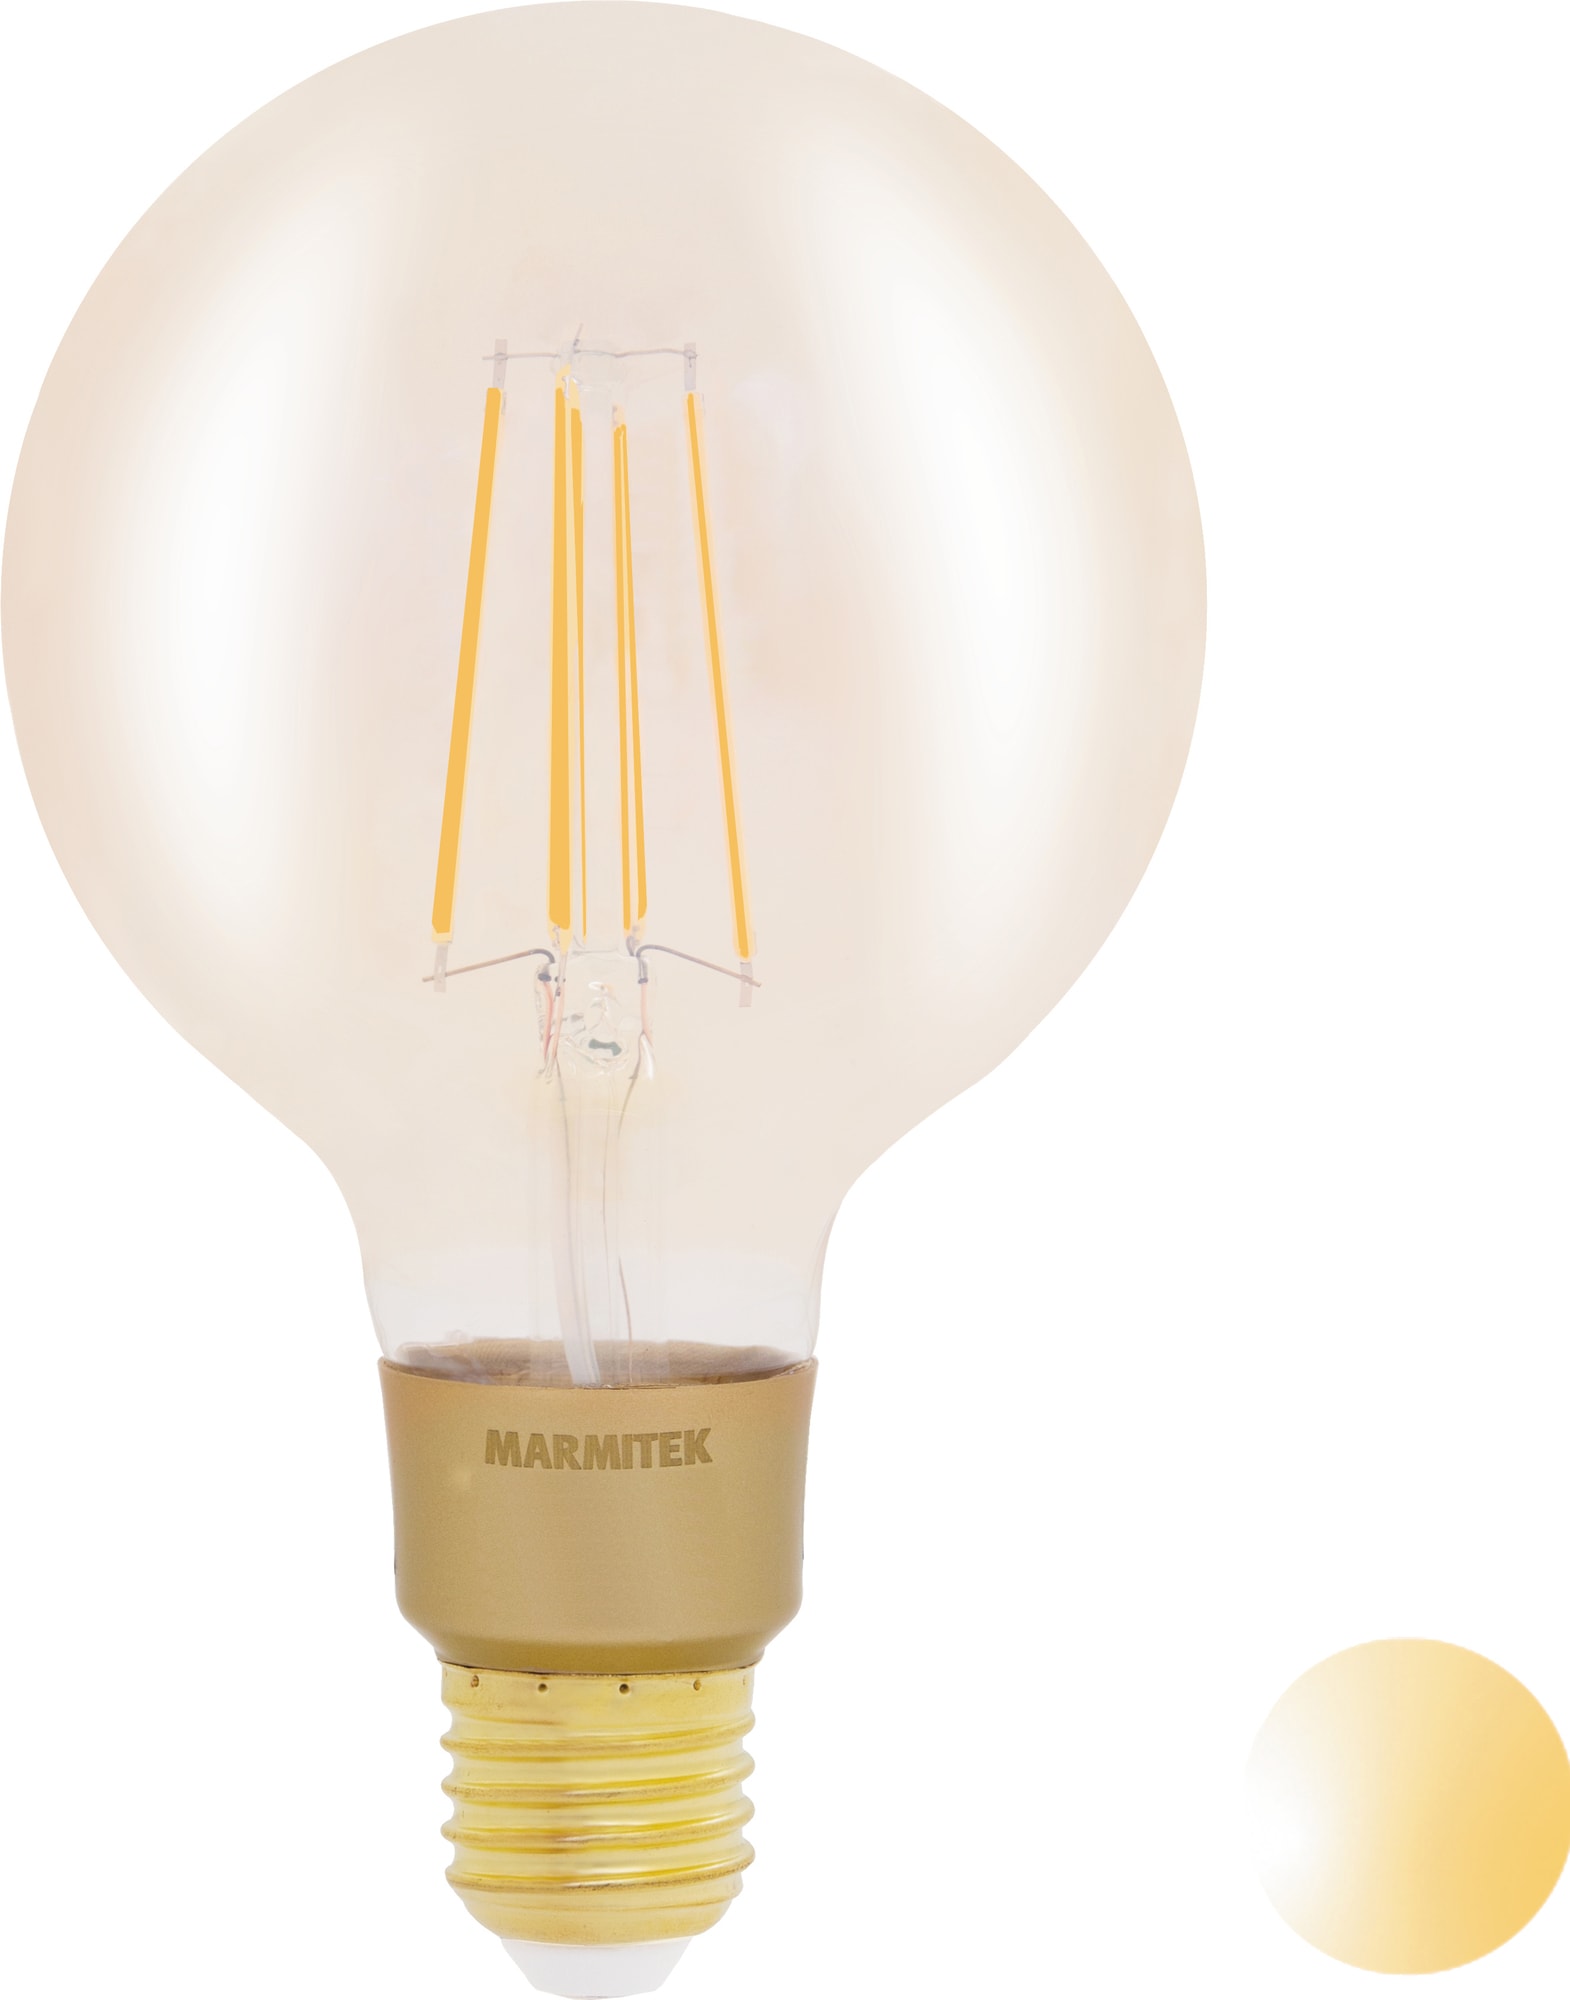 Marmitek GlowLI LED pære E27 8503 thumbnail